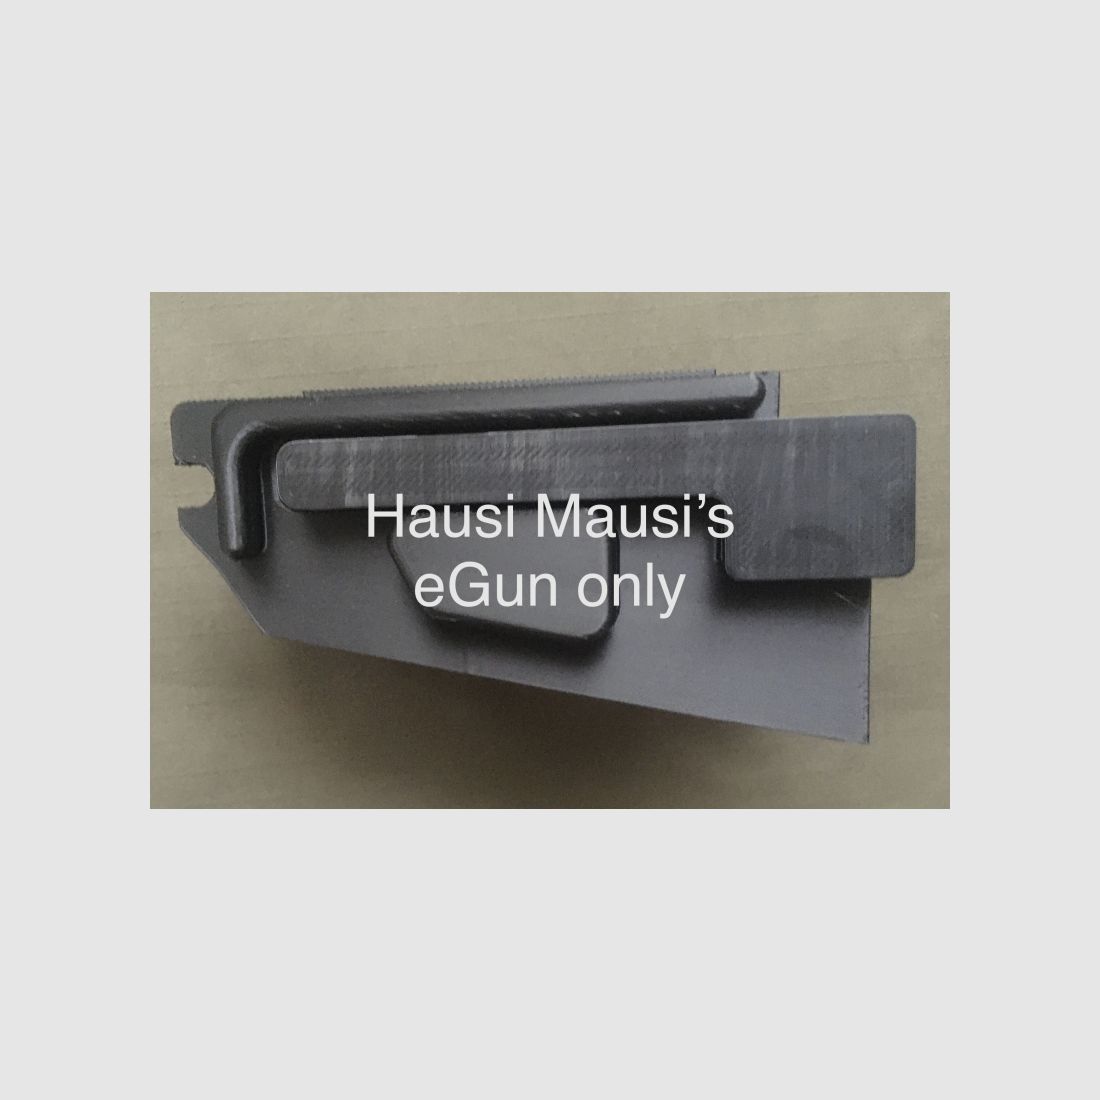 Hausi Mausis Notfall-Ersatz Stanag Magwell, Hk243, G36, Steyr G62, schwarz, black